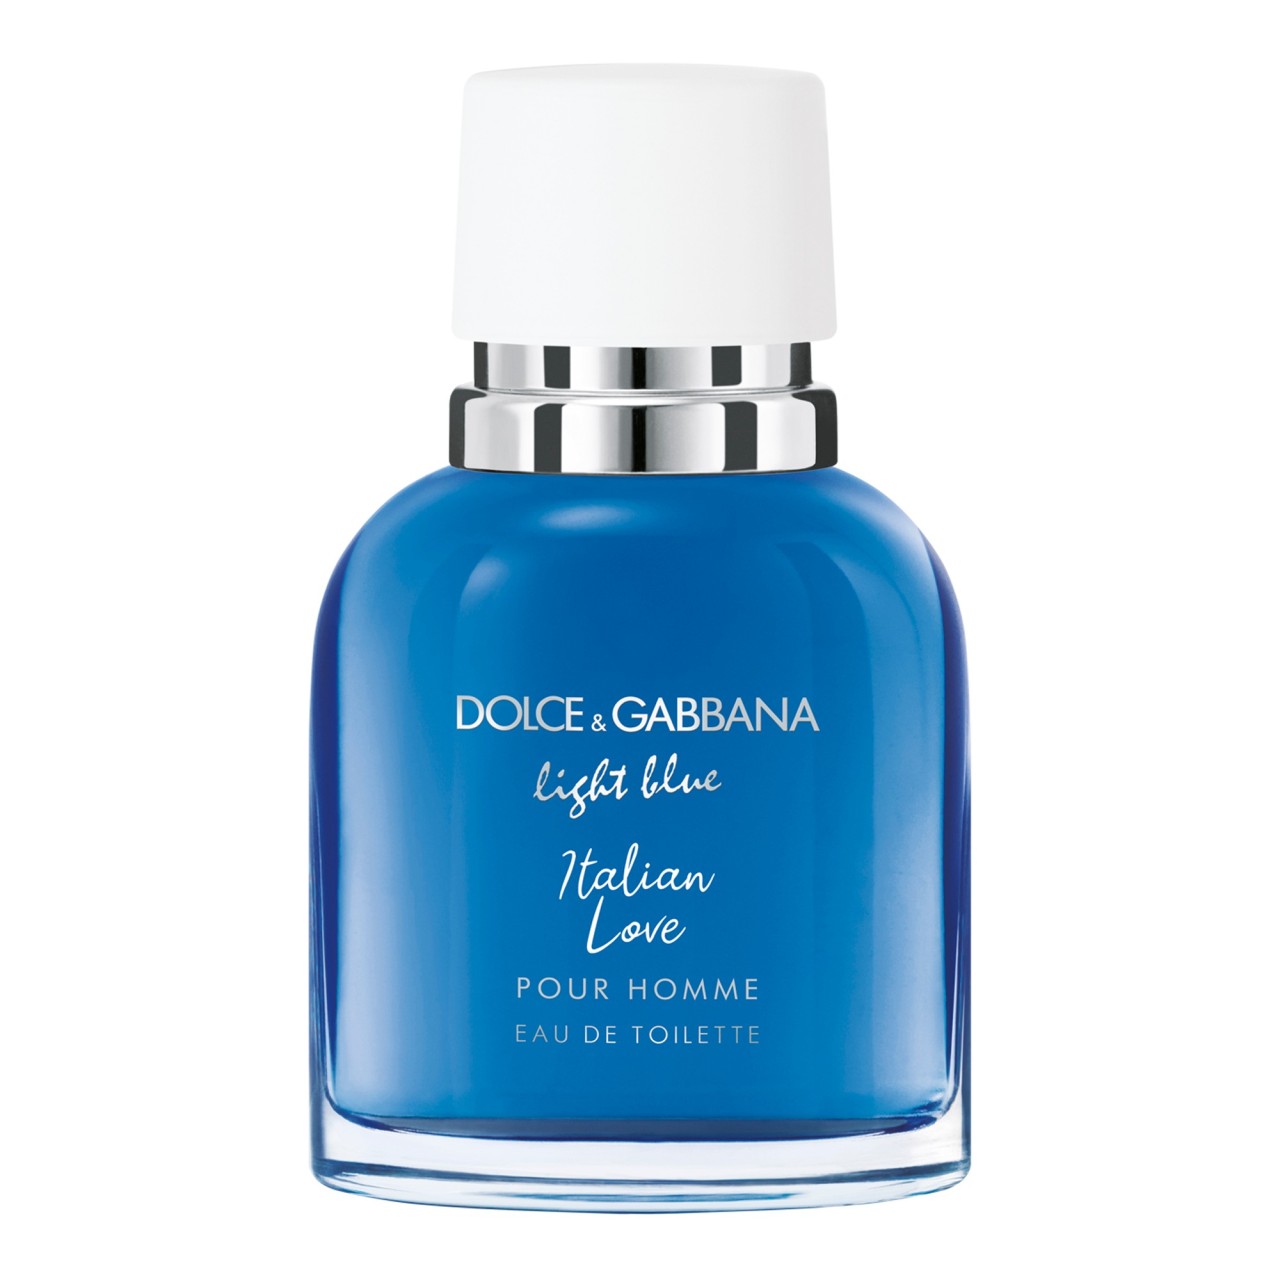 Dolce&Gabbana - Light Blue Pour Homme Italian Love Edt Spray -  50 ml